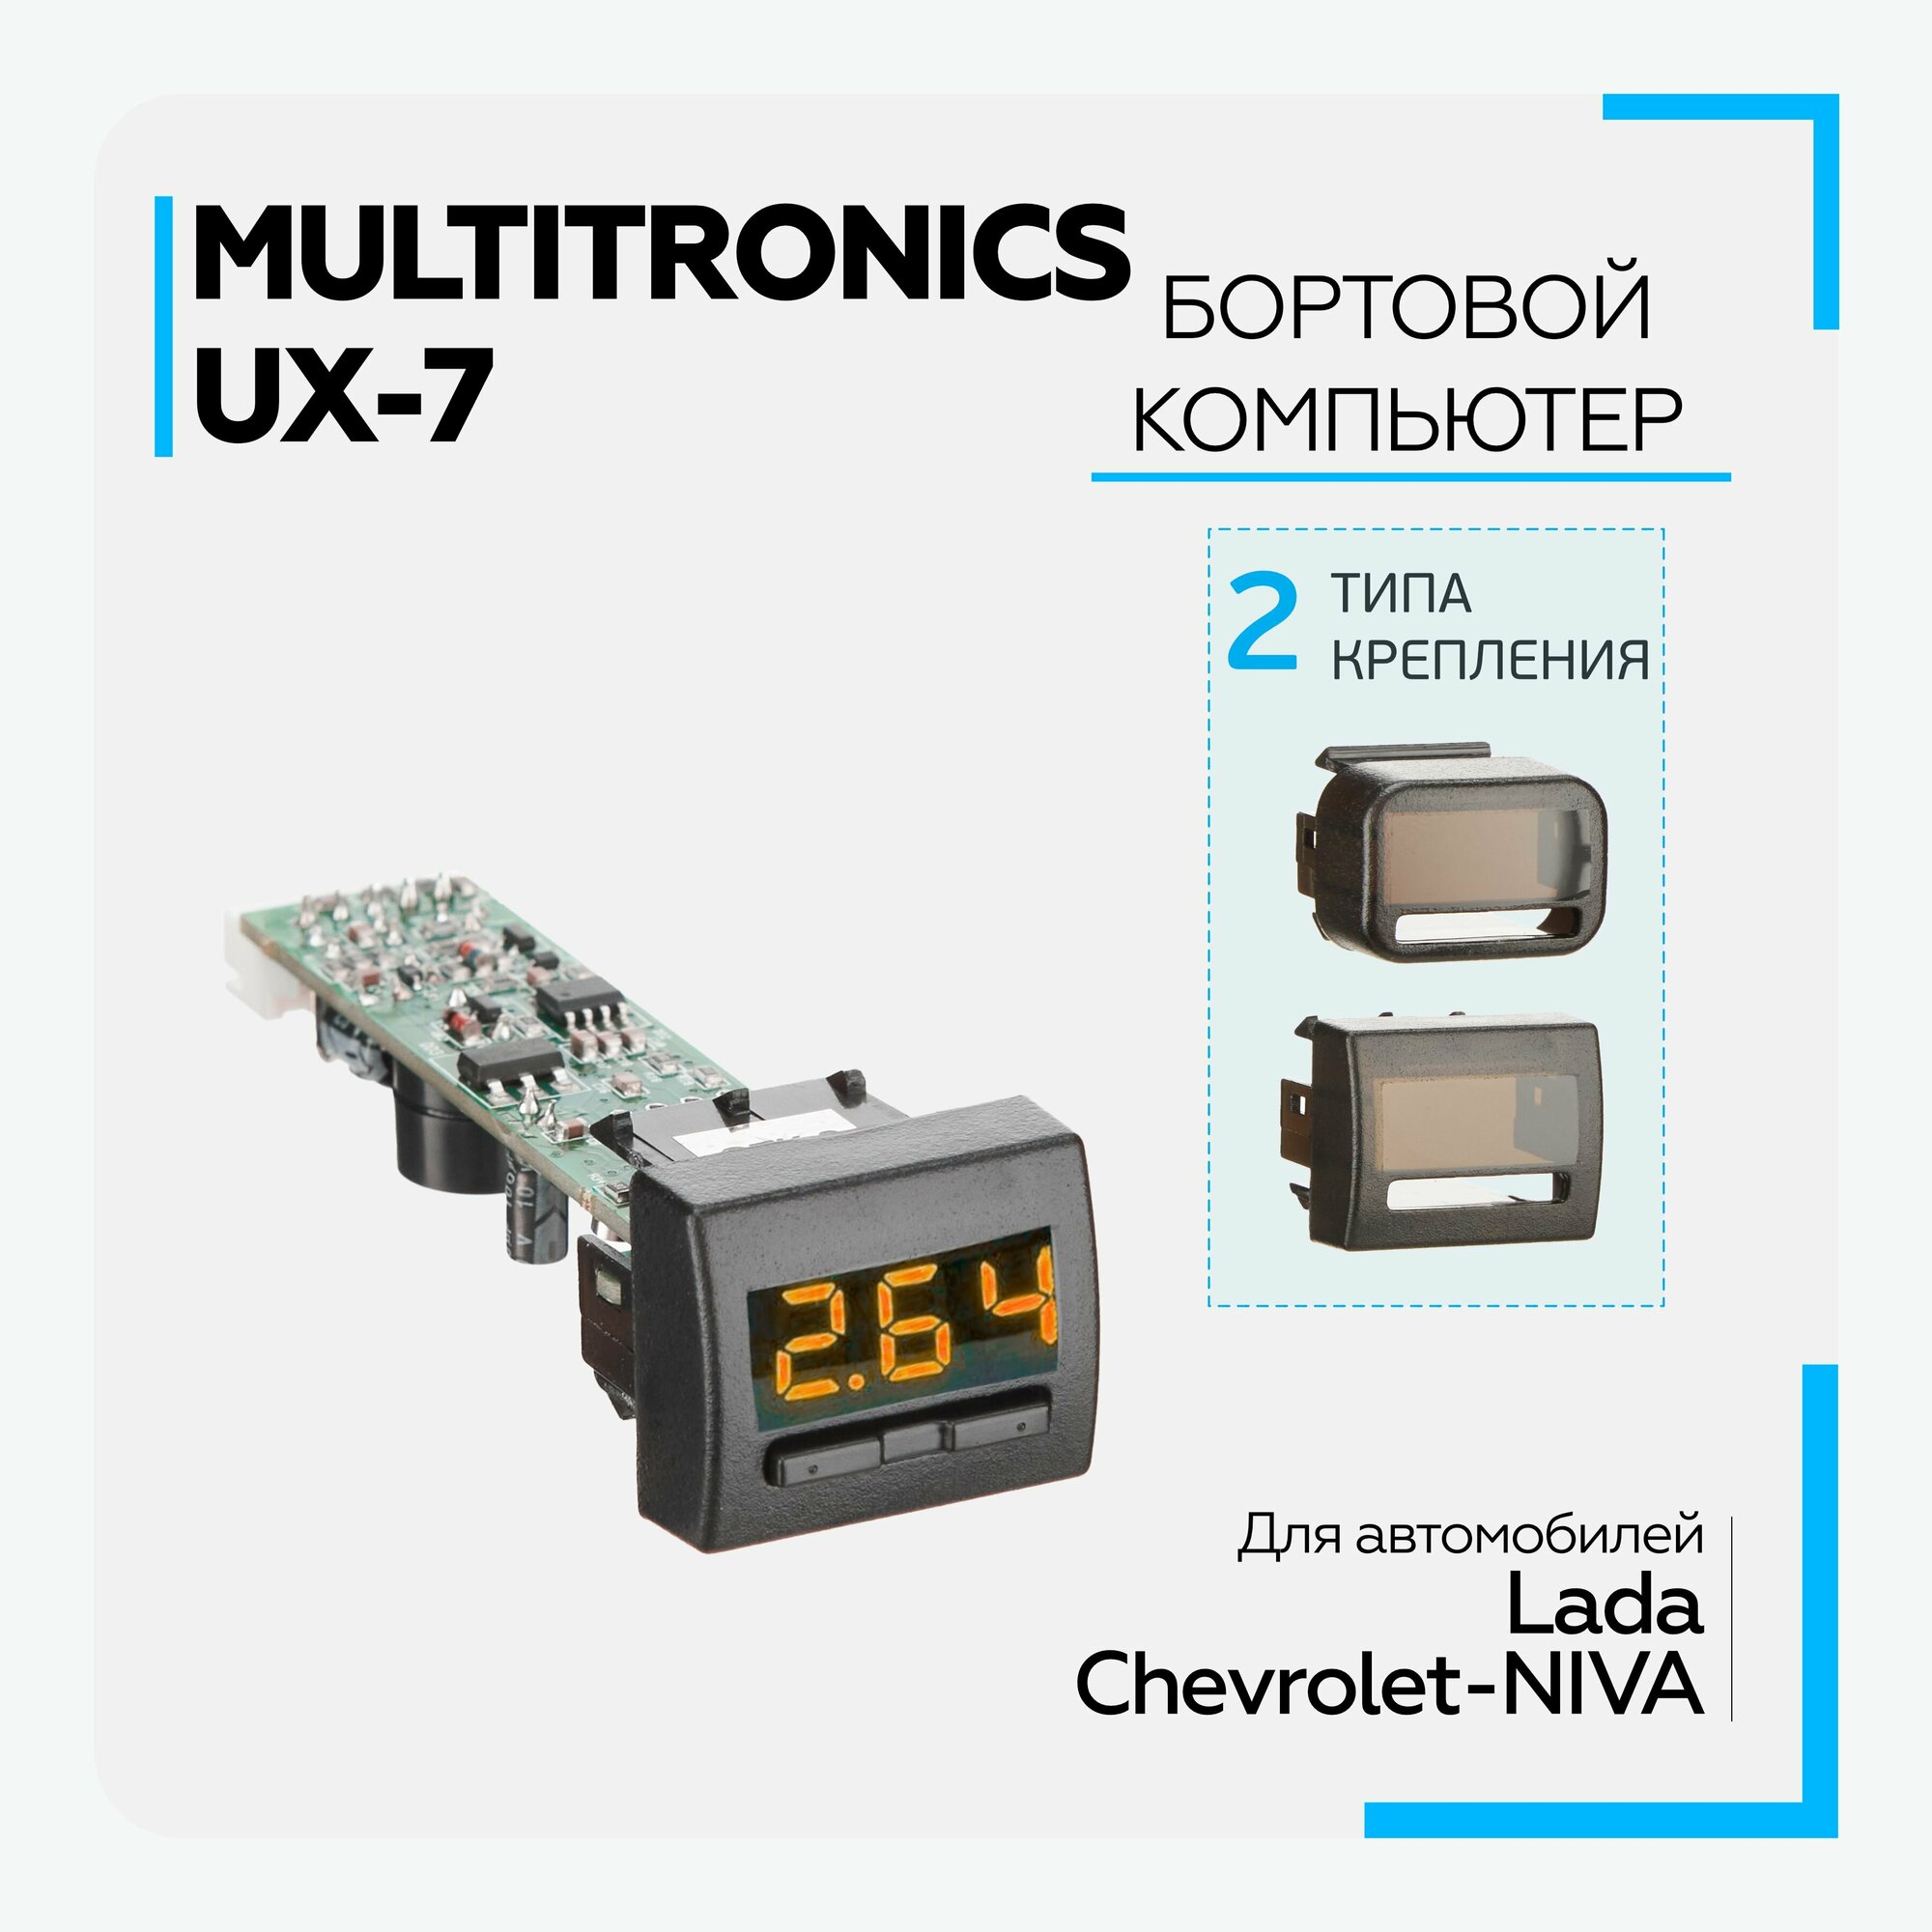 Бортовой компьютер Multitronic UX-7 для LADA и Chevrolet Niva, универсальный для диагностики, контроля состояния автомобиля